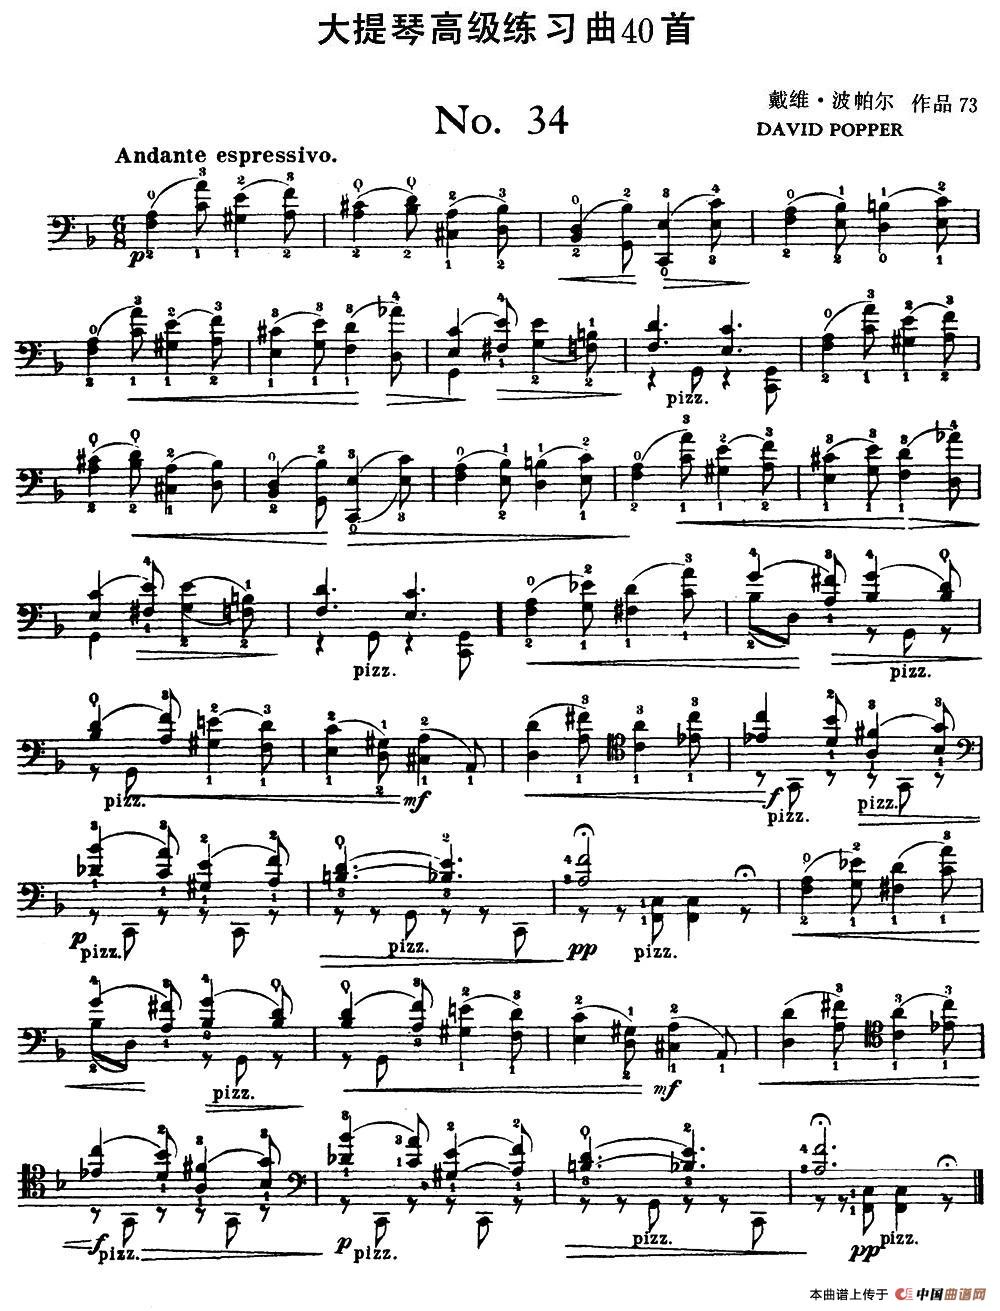 大提琴高级练习曲40首 No.34